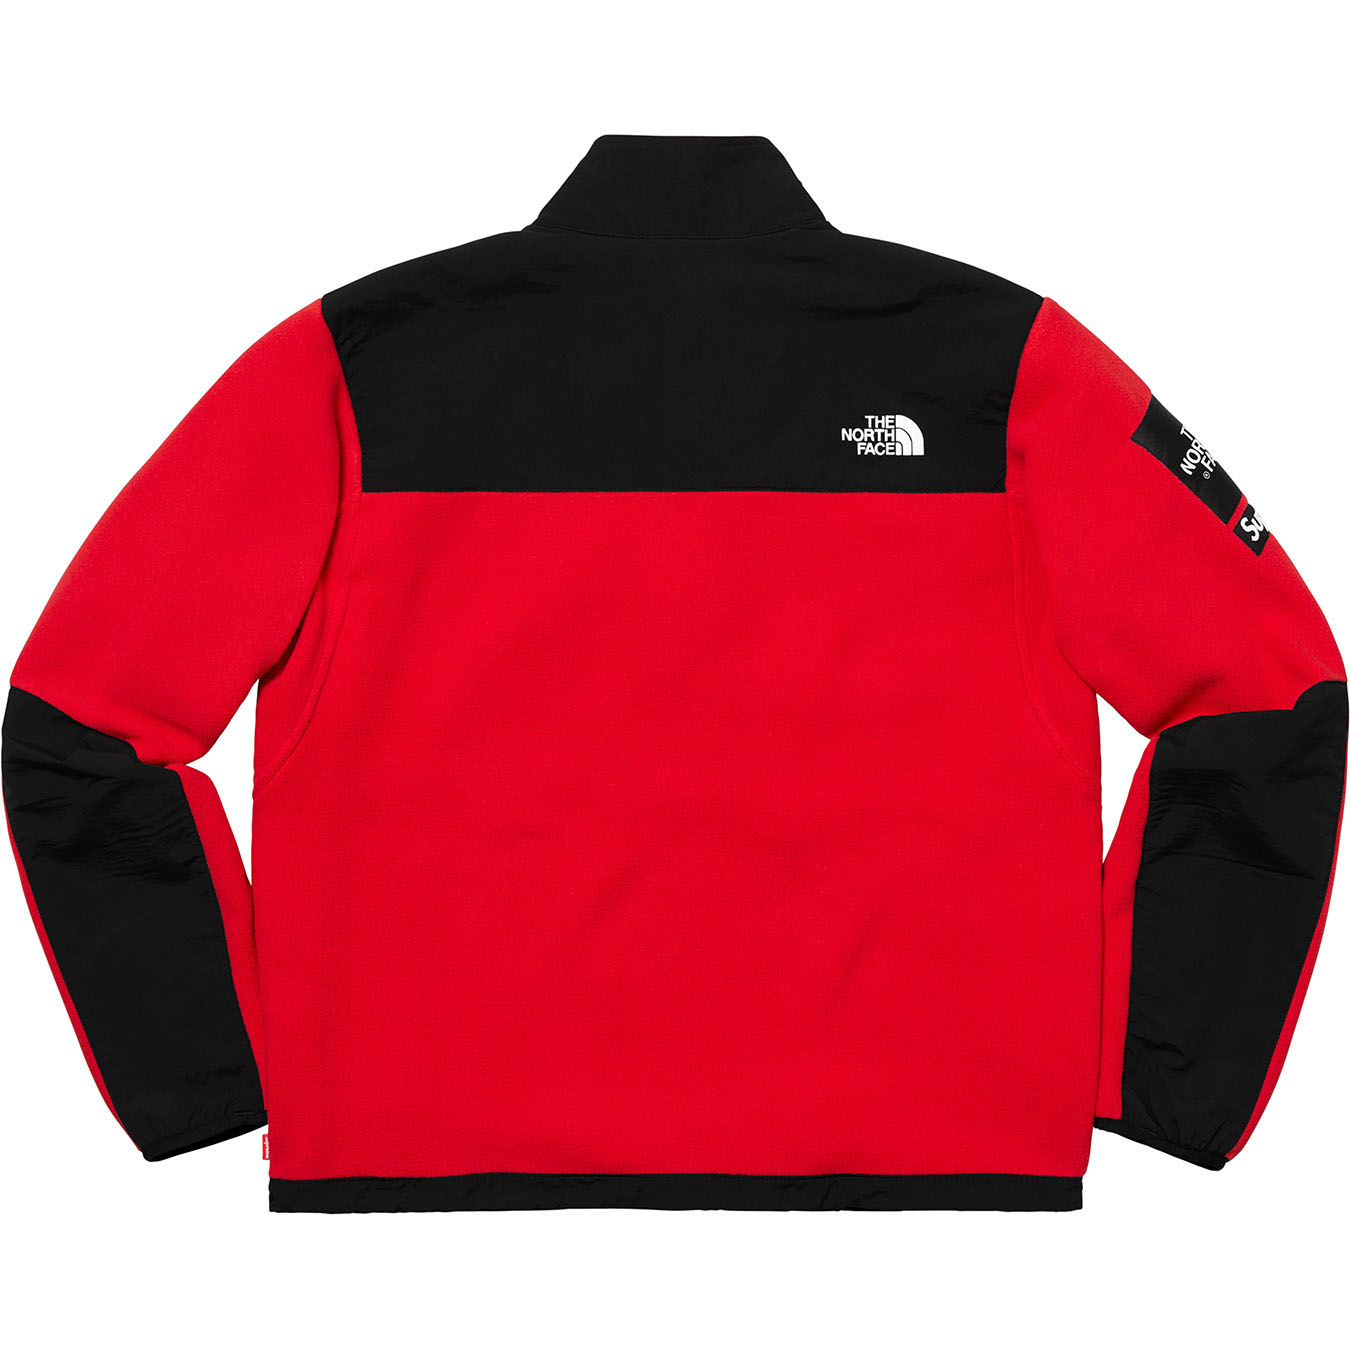 Supreme®/The North Face® Arc Logo Denali Fleece Jacket